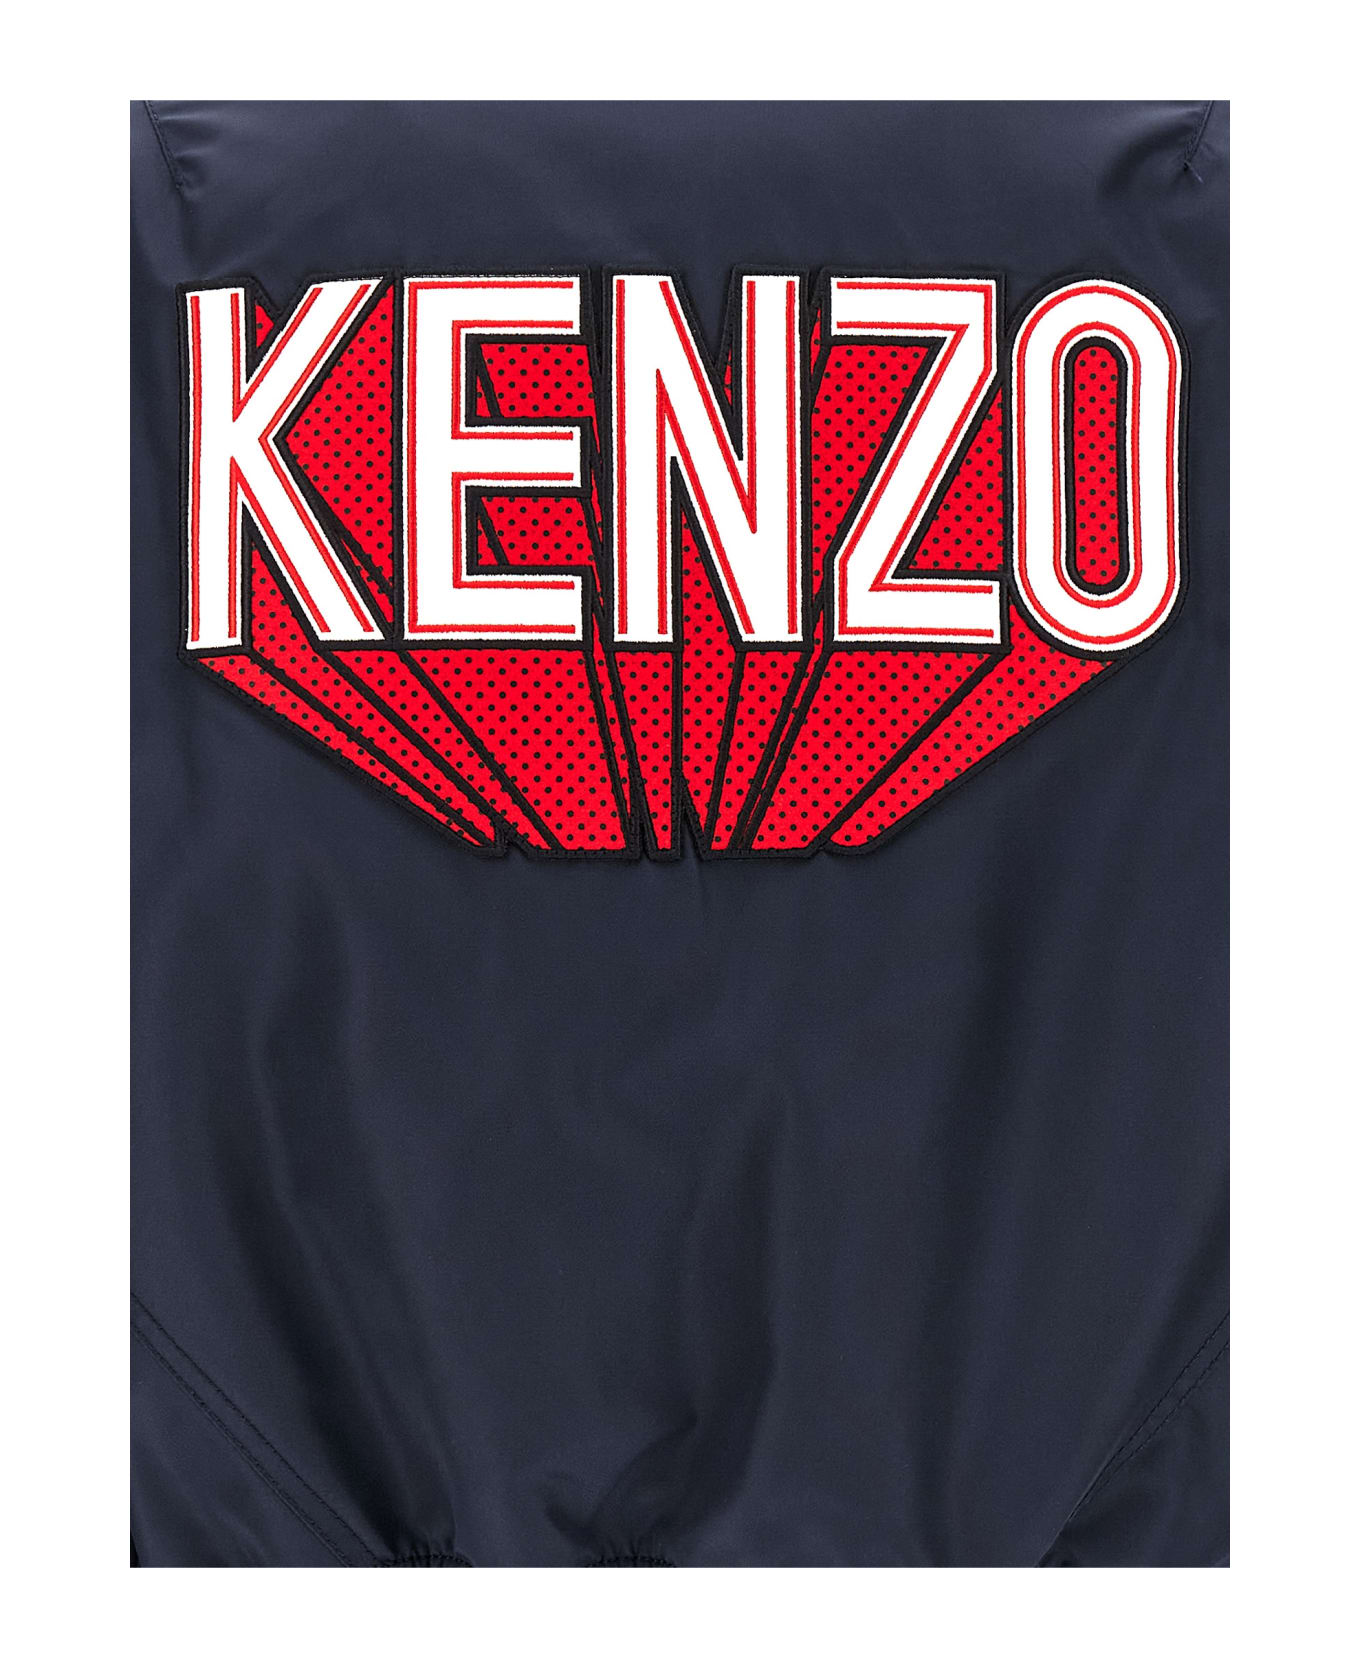 Kenzo 'kenzo 3d' Bomber Jacket - Blue